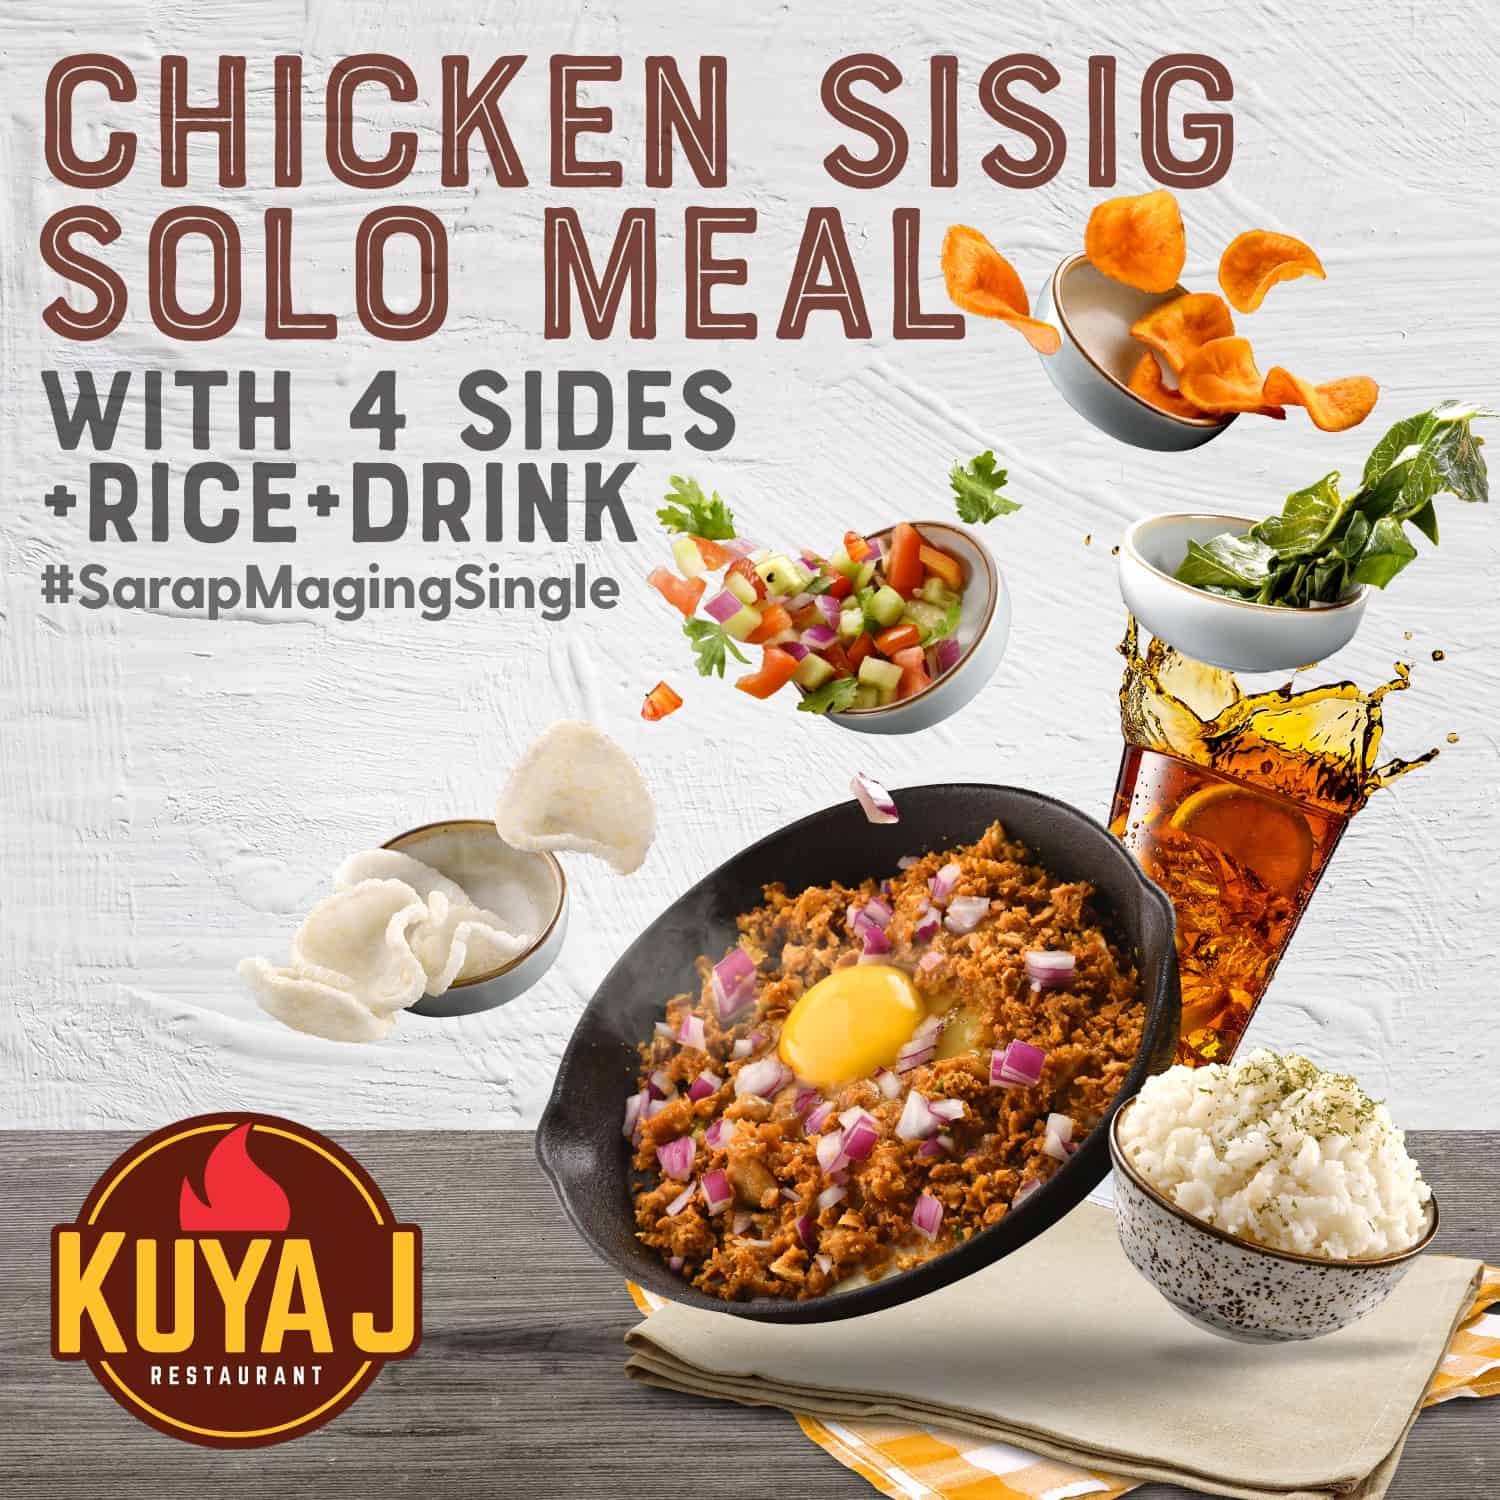 Delicious Sisig on KuyaJ Menu Philippines